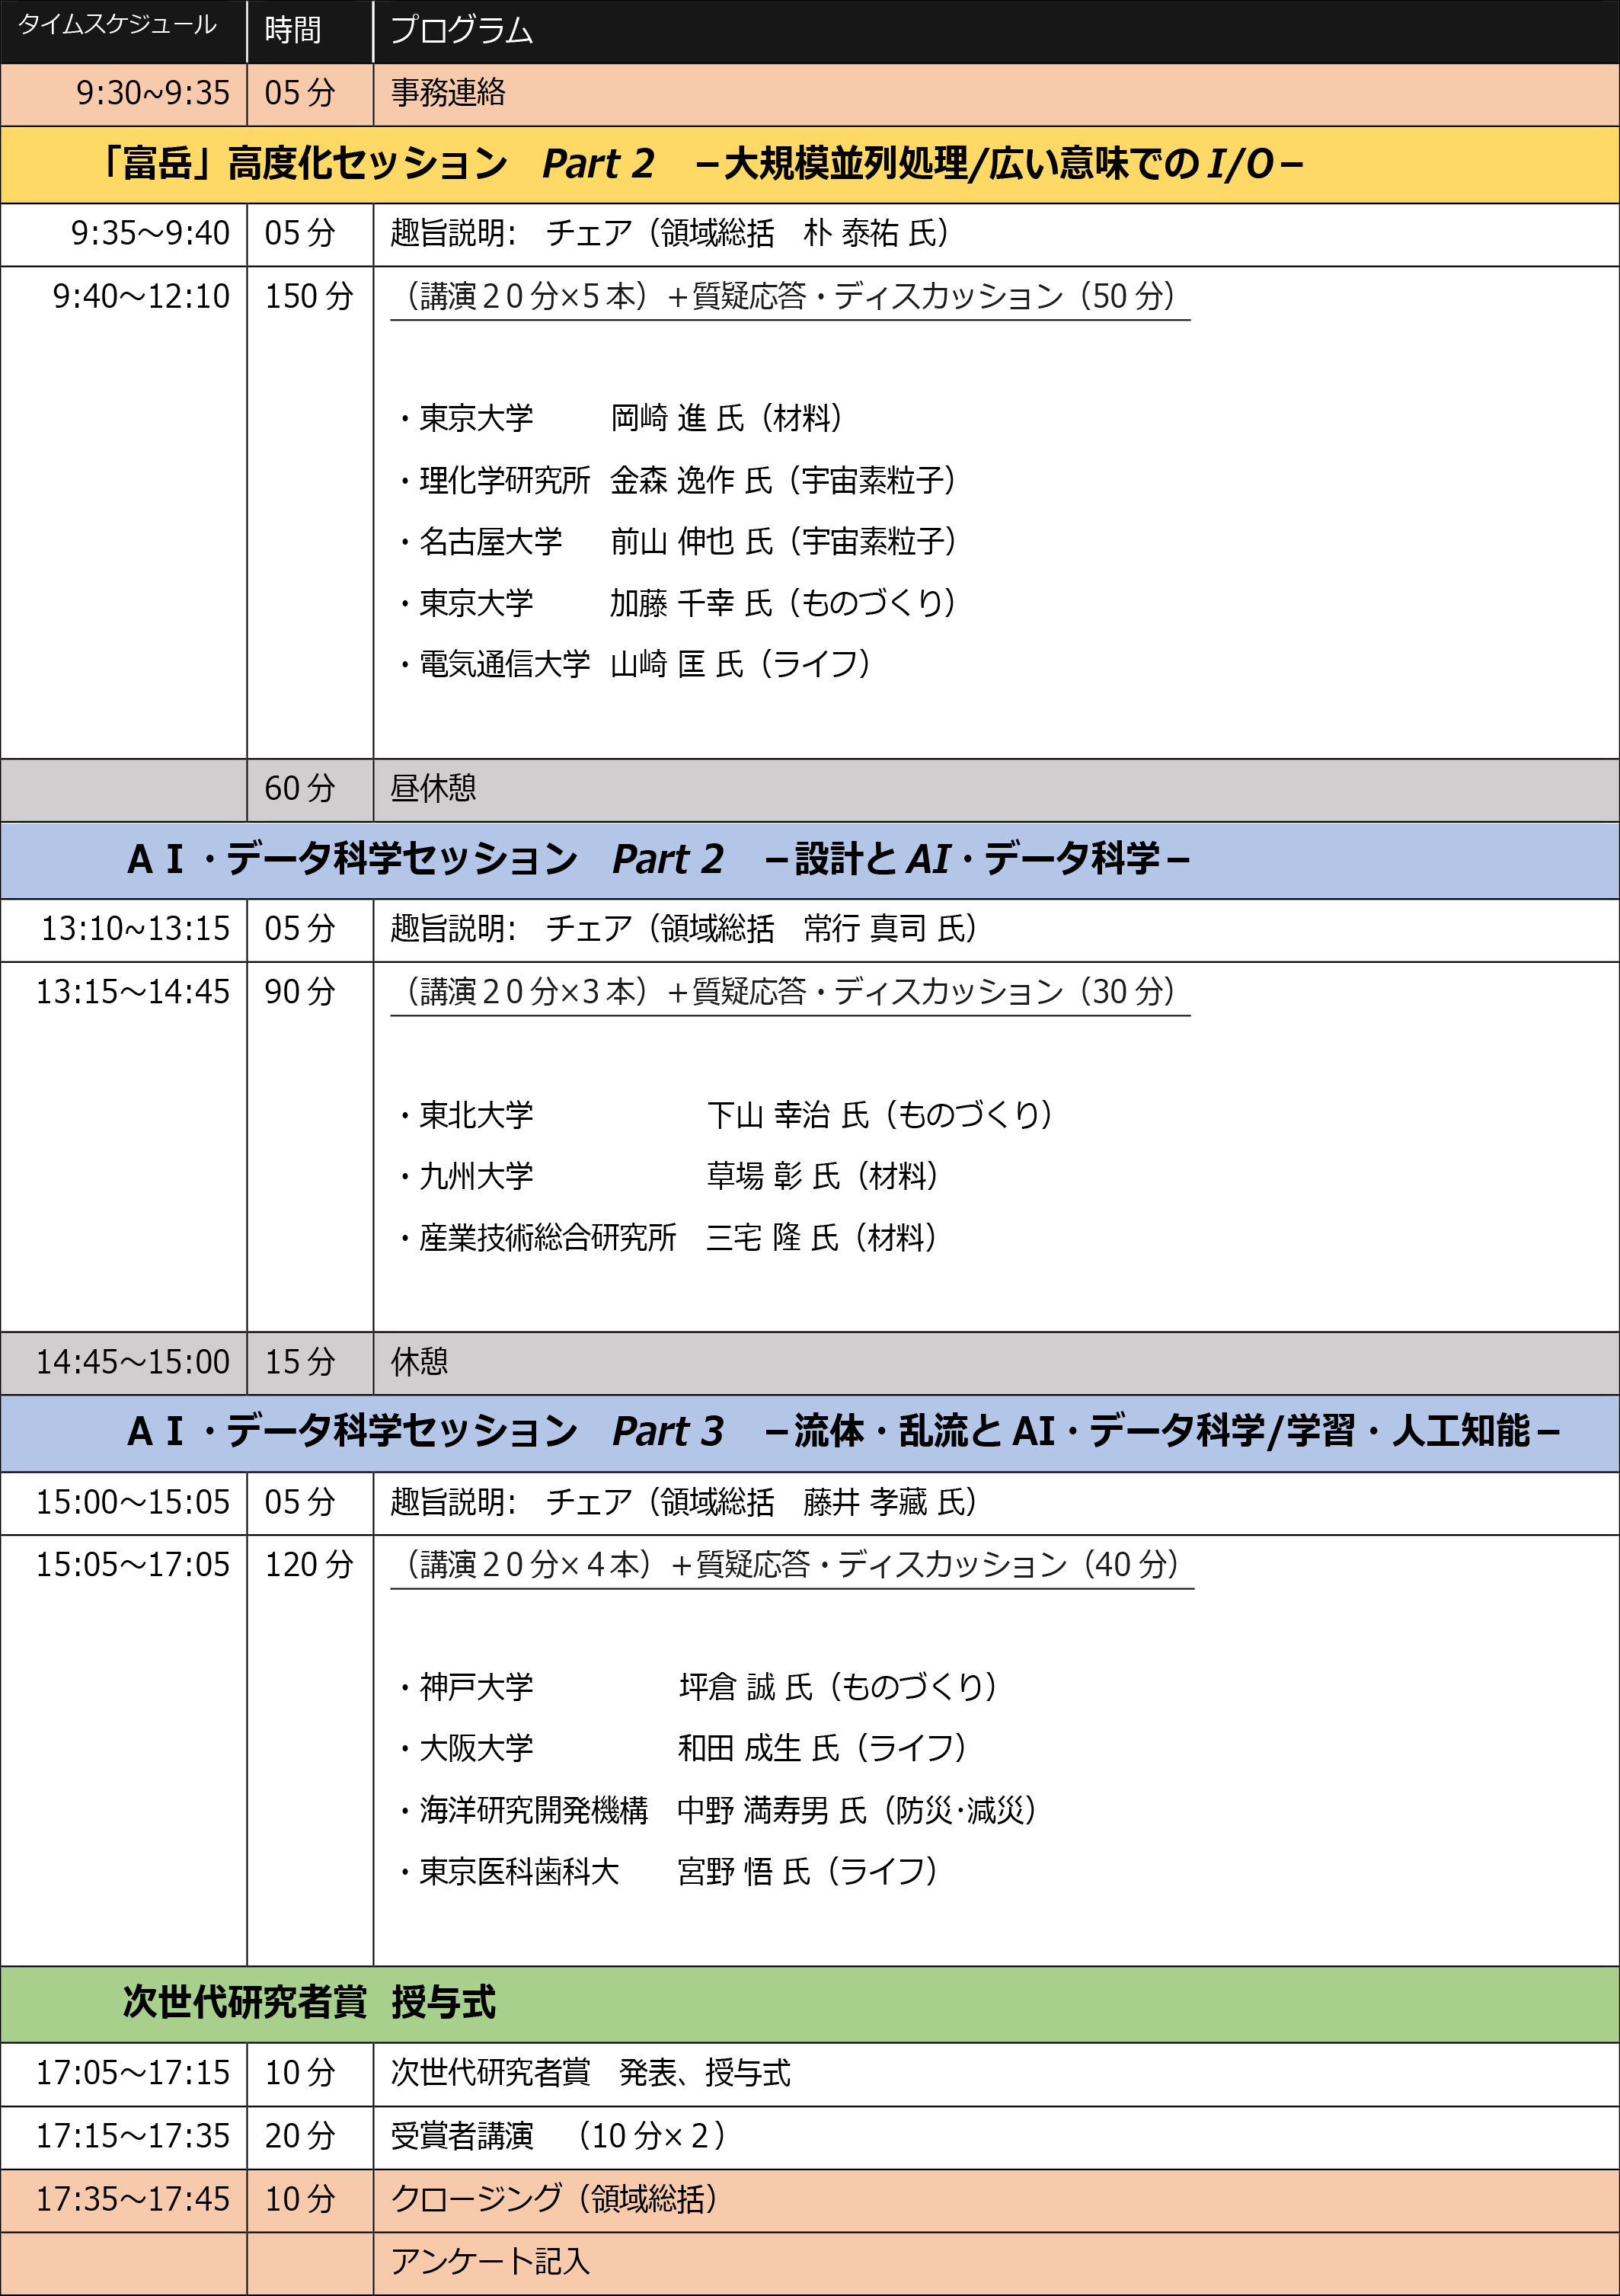 DAY2 03/08（水） program